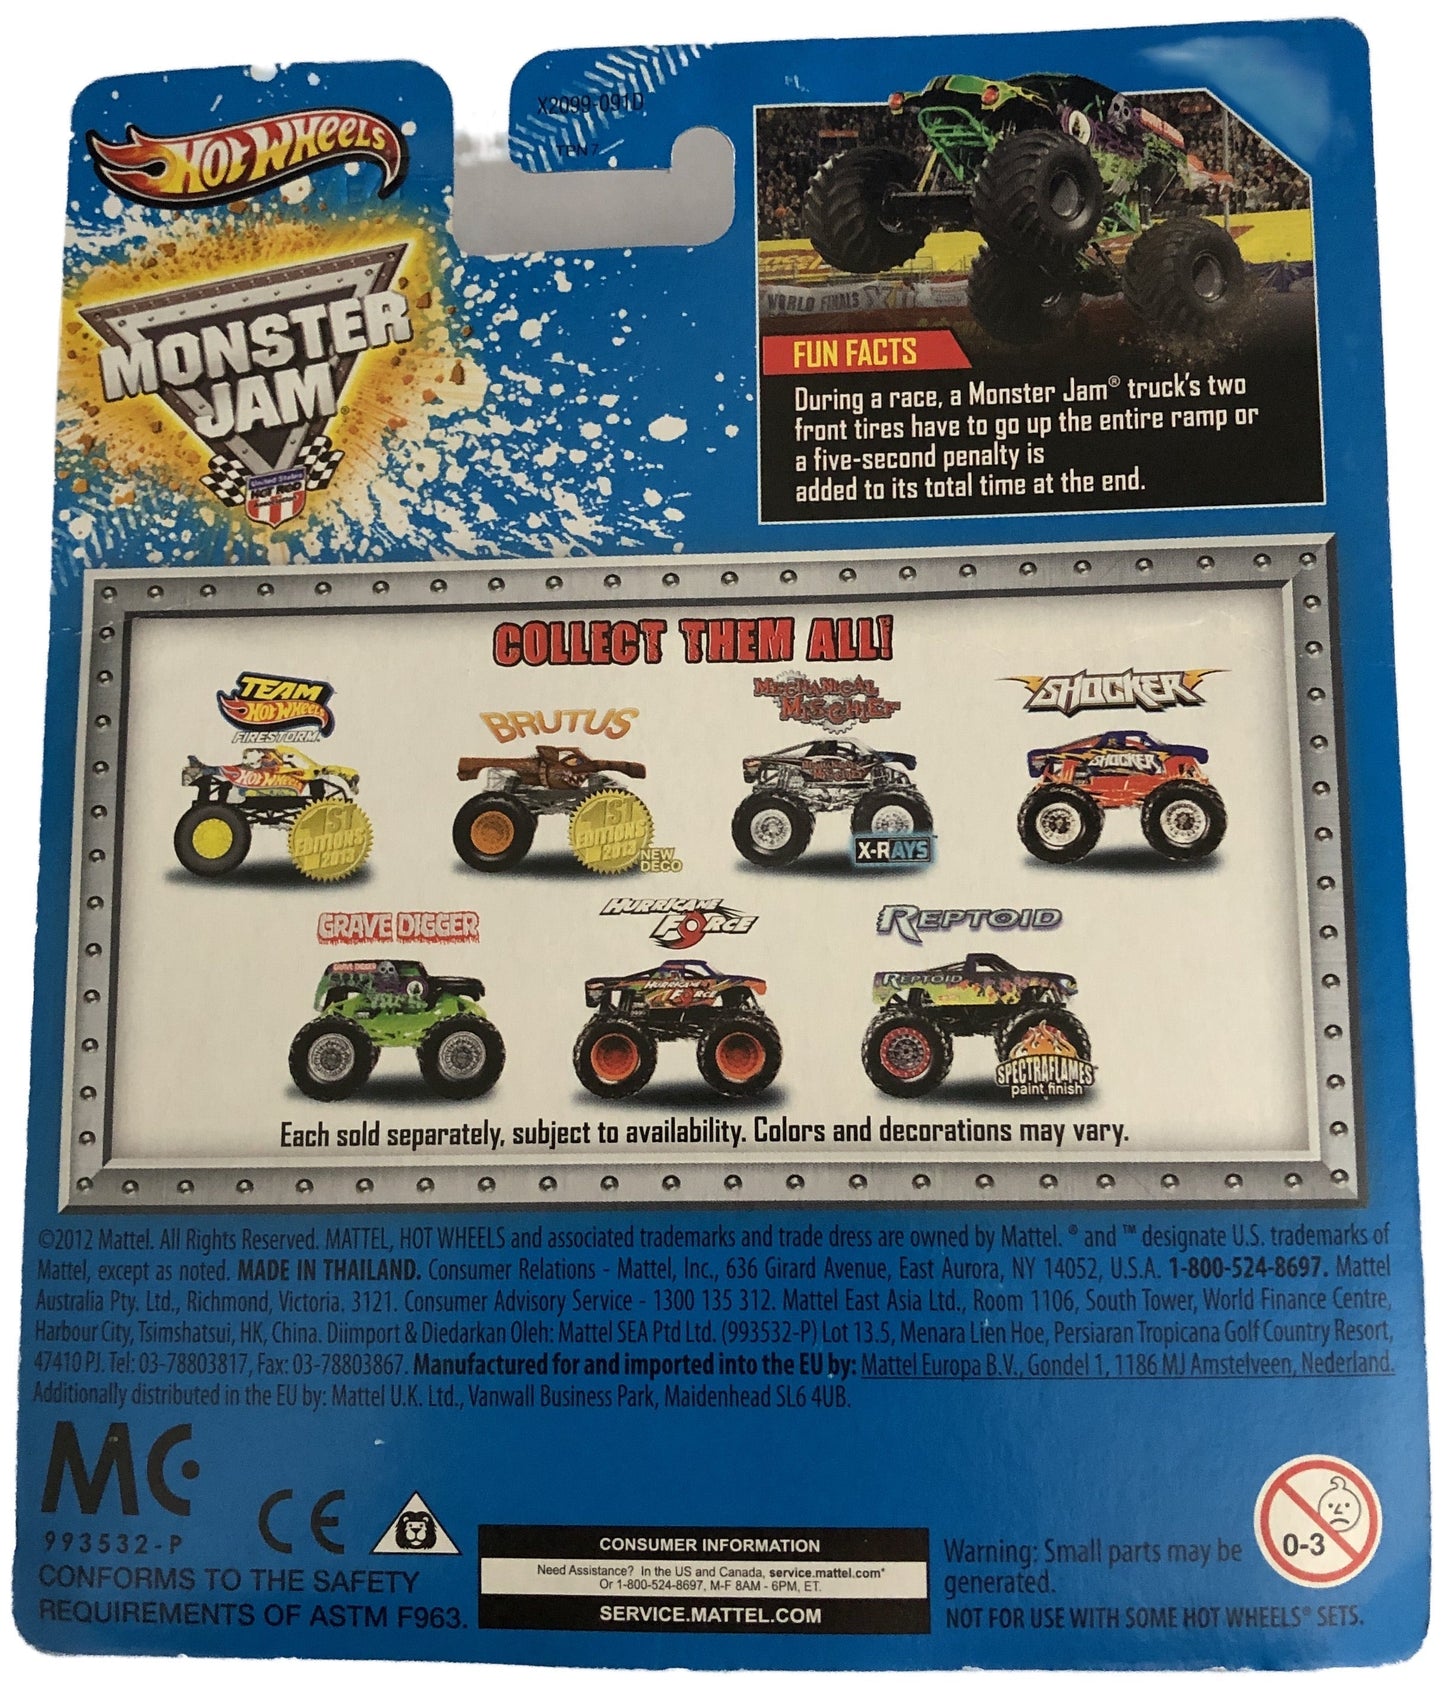  Mattel - Hot Wheels - Monster Jam - Grave Digger - diecast truck